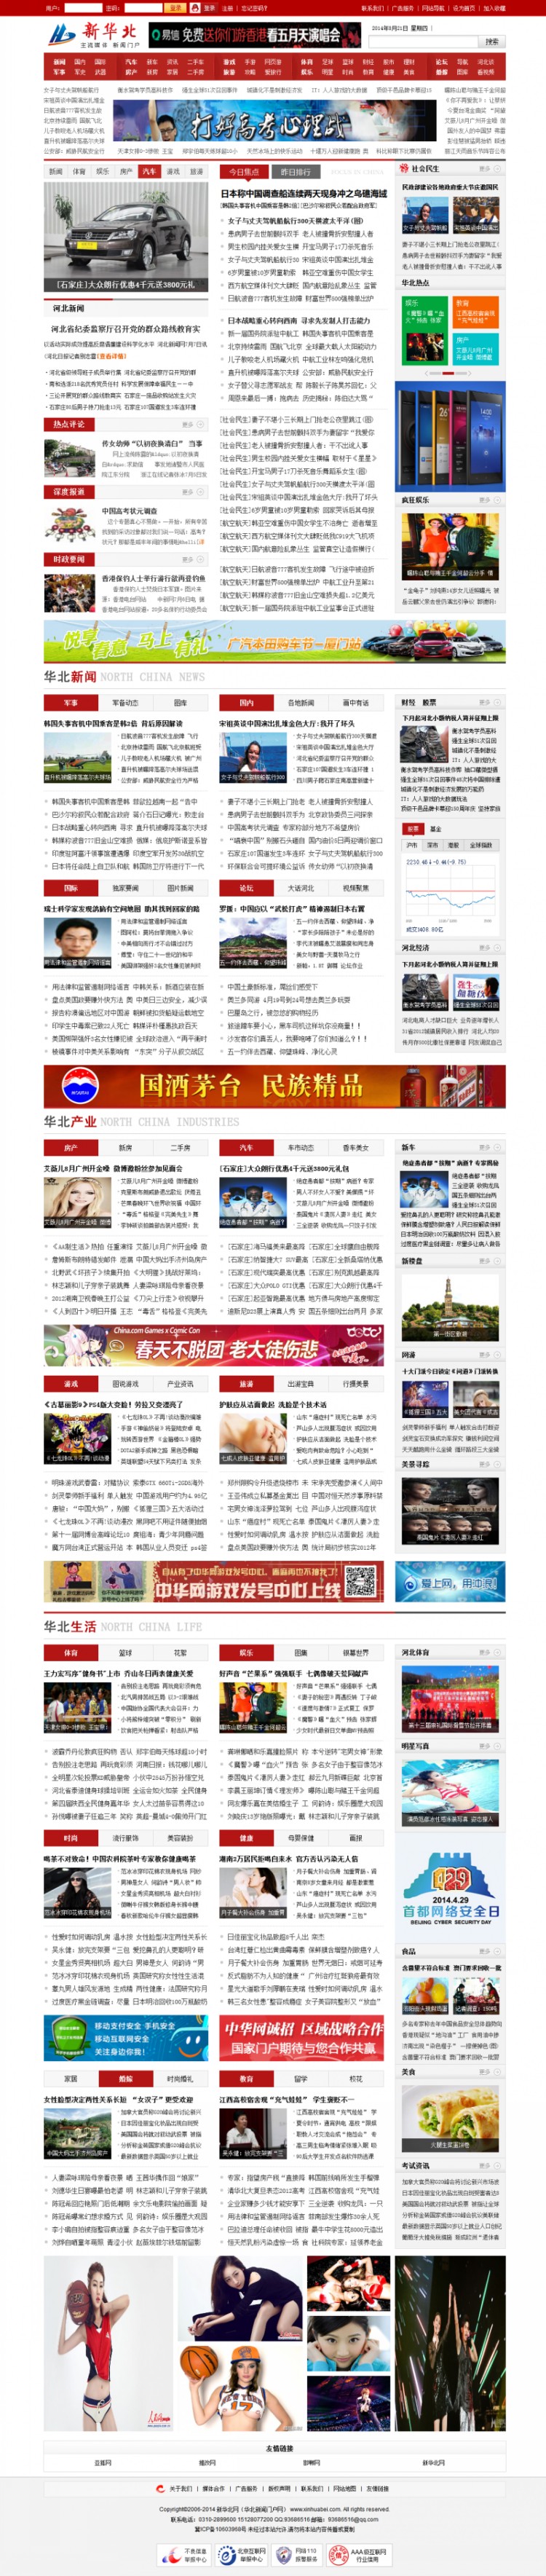 帝国cms 新华北网模板源码 门户网站模板 地方完整新闻综合门户